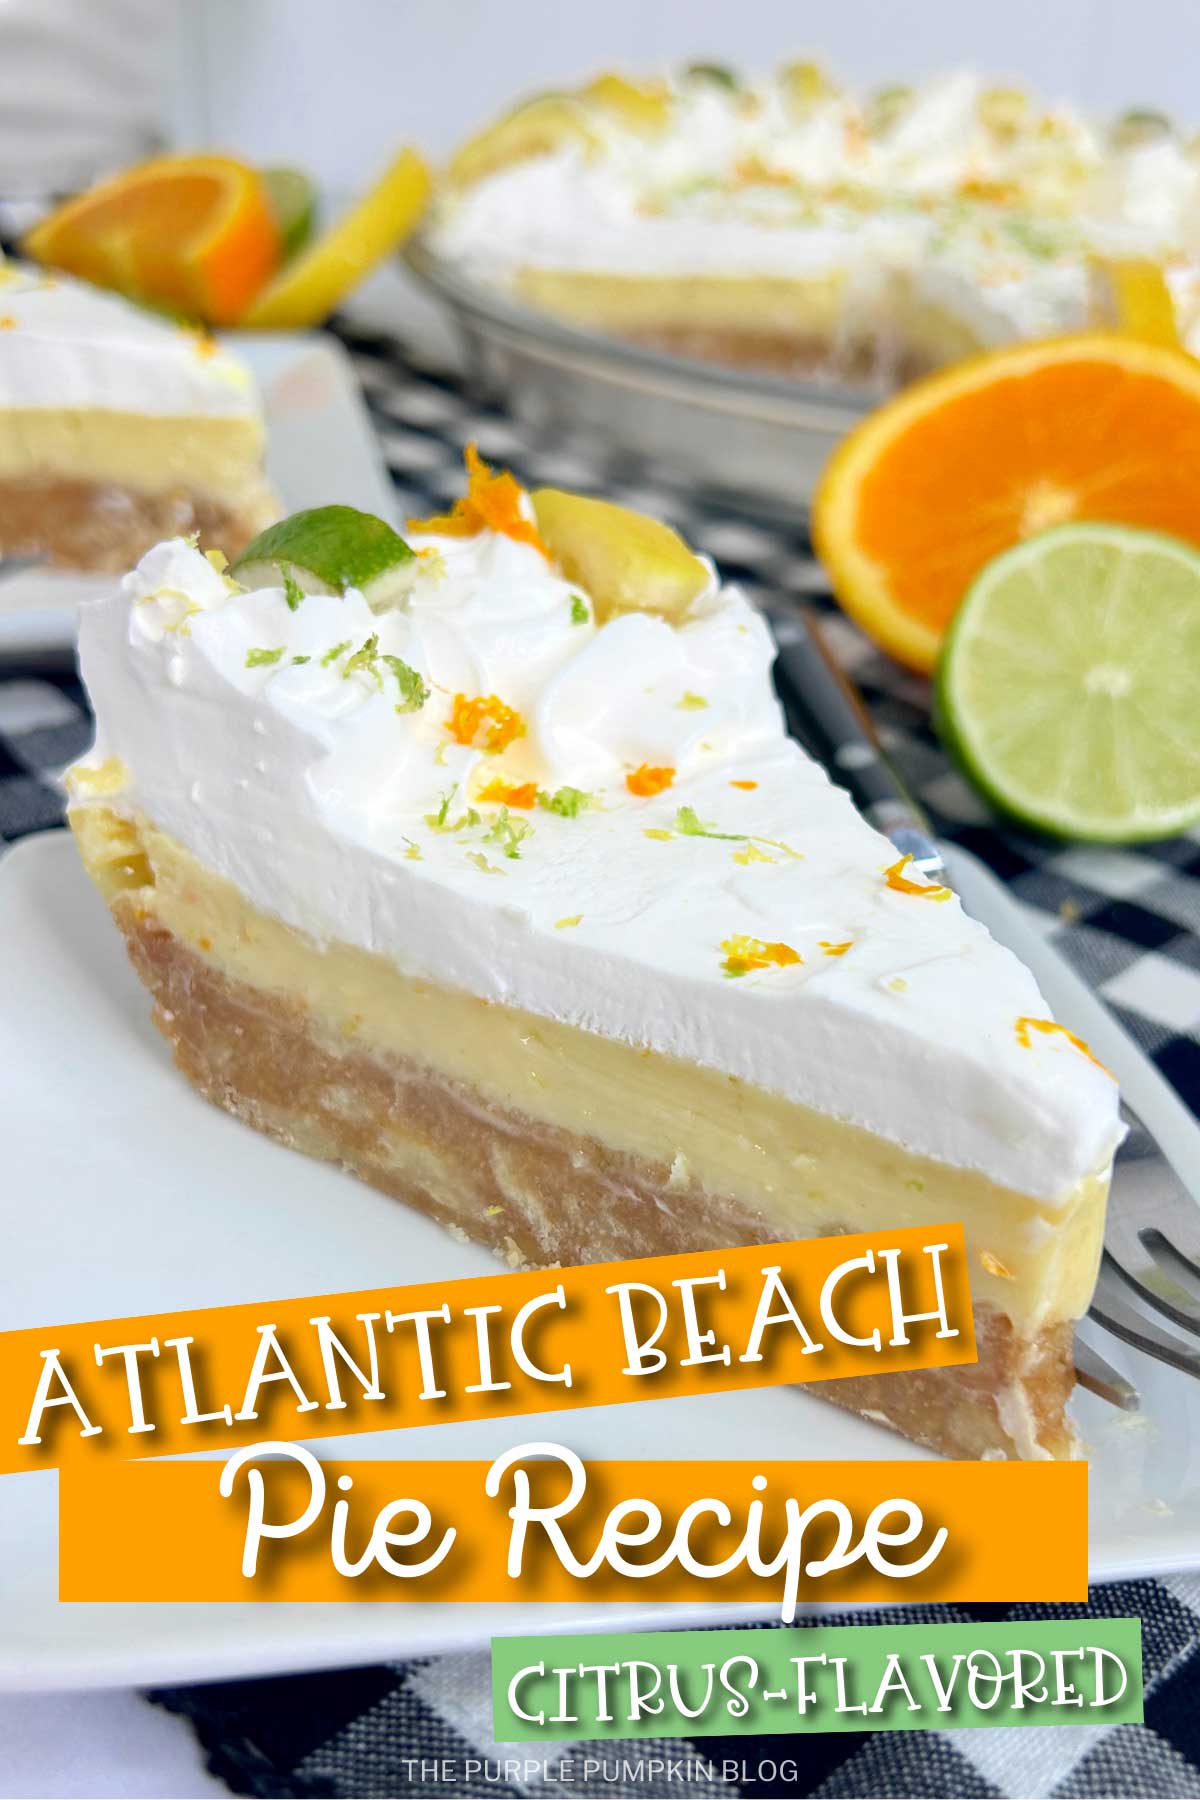 Atlantic-Beach-Pie-Recipe-Citrus-Flavored